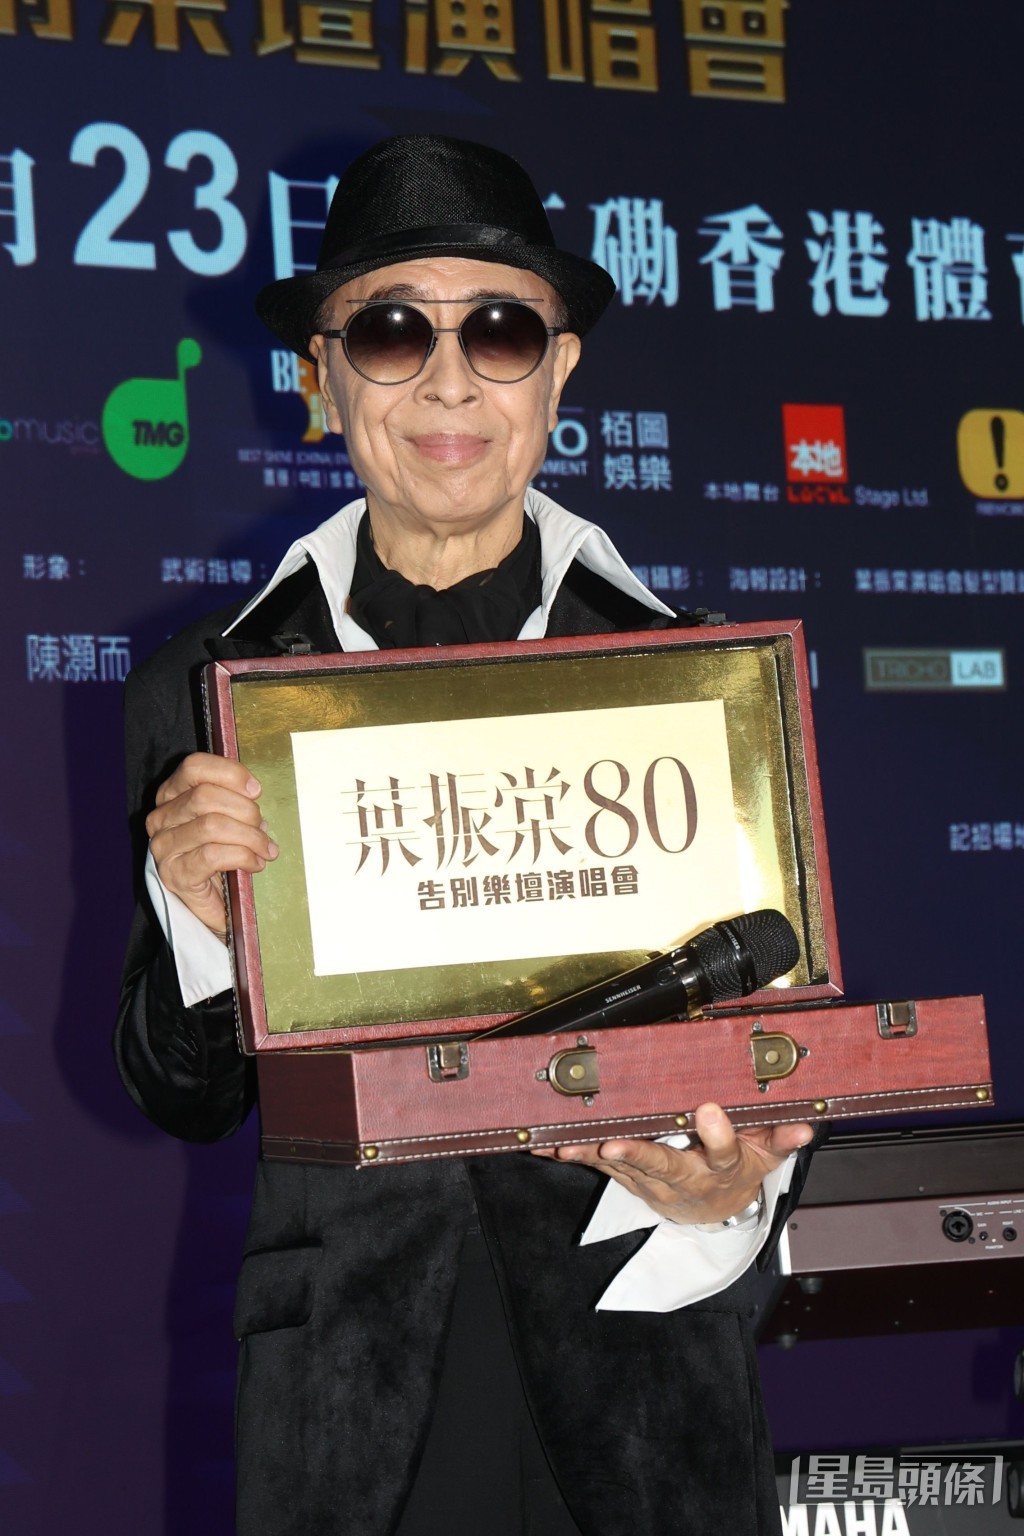 現年80歲的殿堂級歌手葉振棠，將於下月23日舉行首個紅館演唱會「葉振棠 80告別樂壇演唱會」。